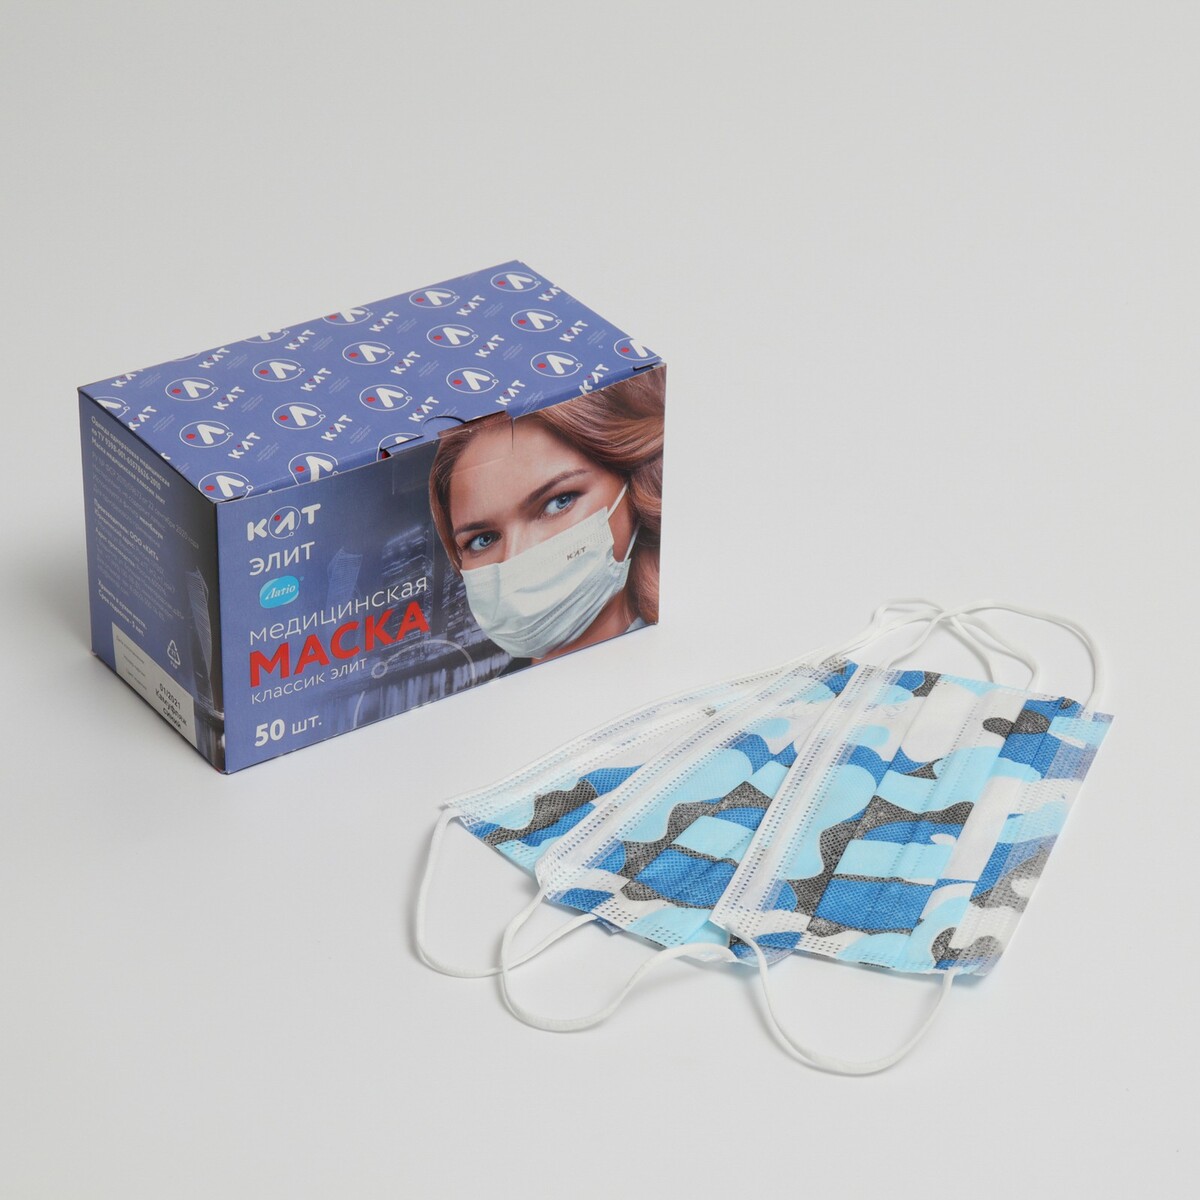 Маска медицинская latio синий камуфляж, 2 фиксатора формы, 50 шт картонный блок бинты эластичные clinch boxing crepe bandage tech fix c140 синий